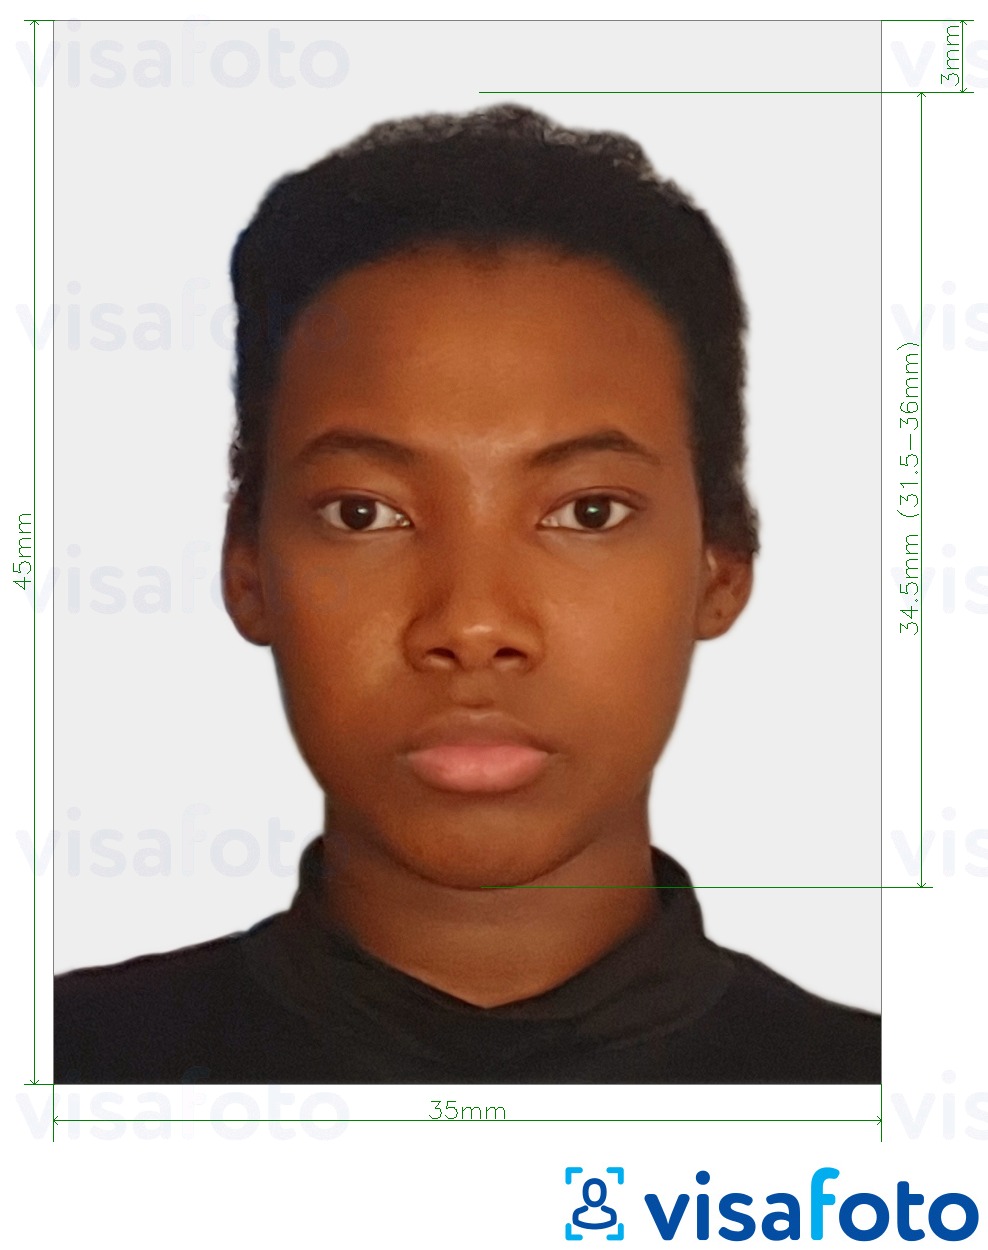 ตัวอย่างภาพถ่ายสำหรับ Cote d'Ivoire visa 4.5x3.5 ซม. (45x35 มม.) ด้วยข้อกำหนดเกี่ยวกับขนาดที่แน่นอน